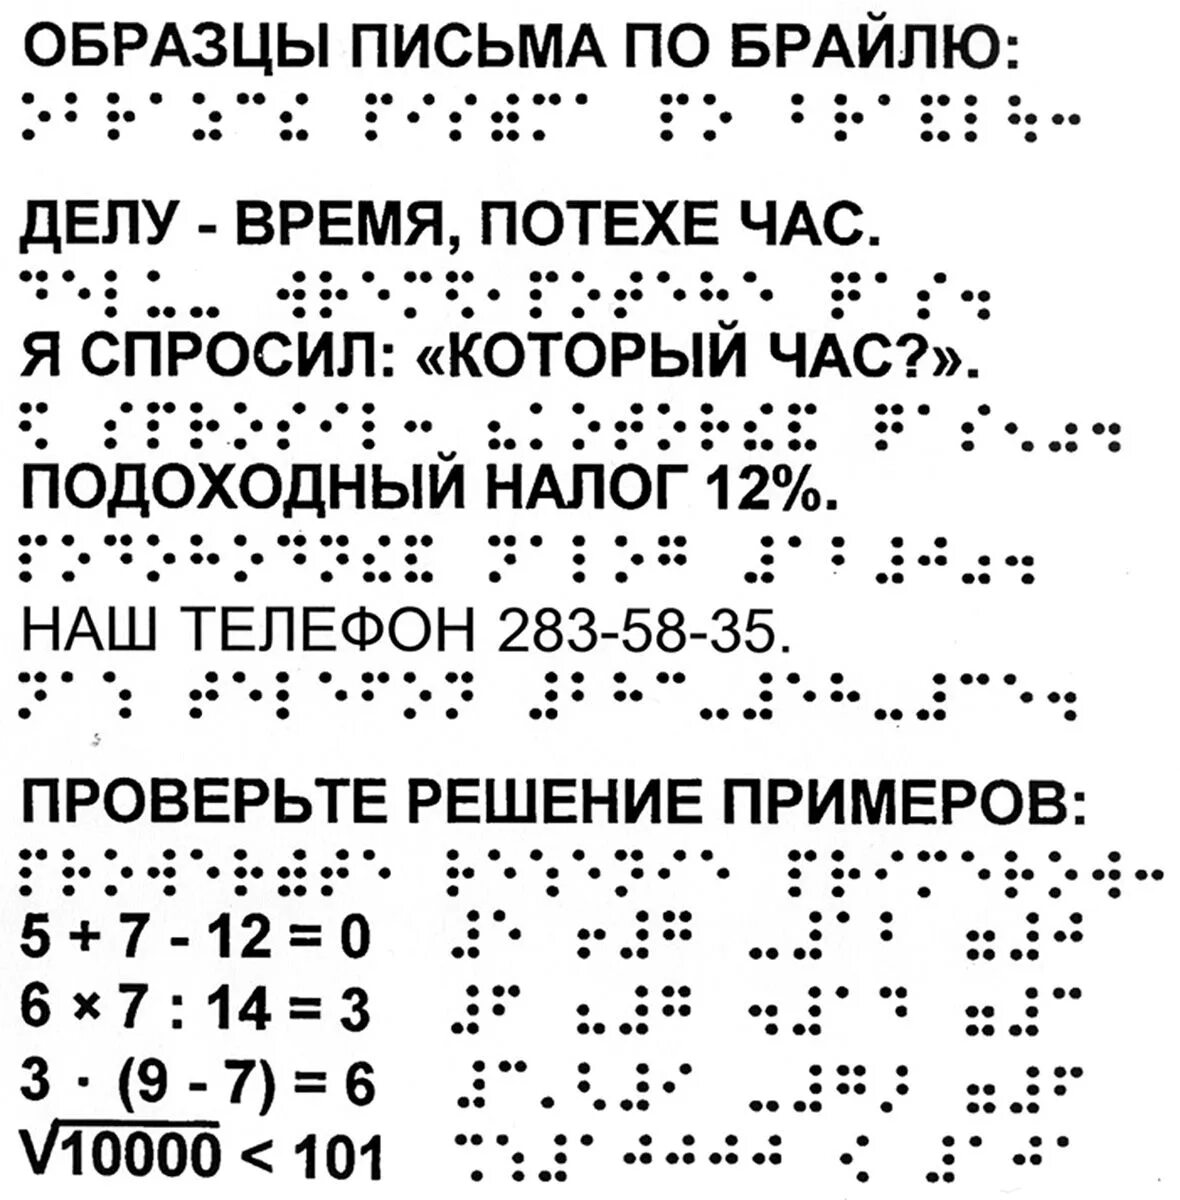 Азбука по системе Брайля. Рельефно-точечный шрифт Брайля. Алфавит Брайля на русском для слепых. Азбука для слепых шрифт Брайля. Шрифты для книги для чтения